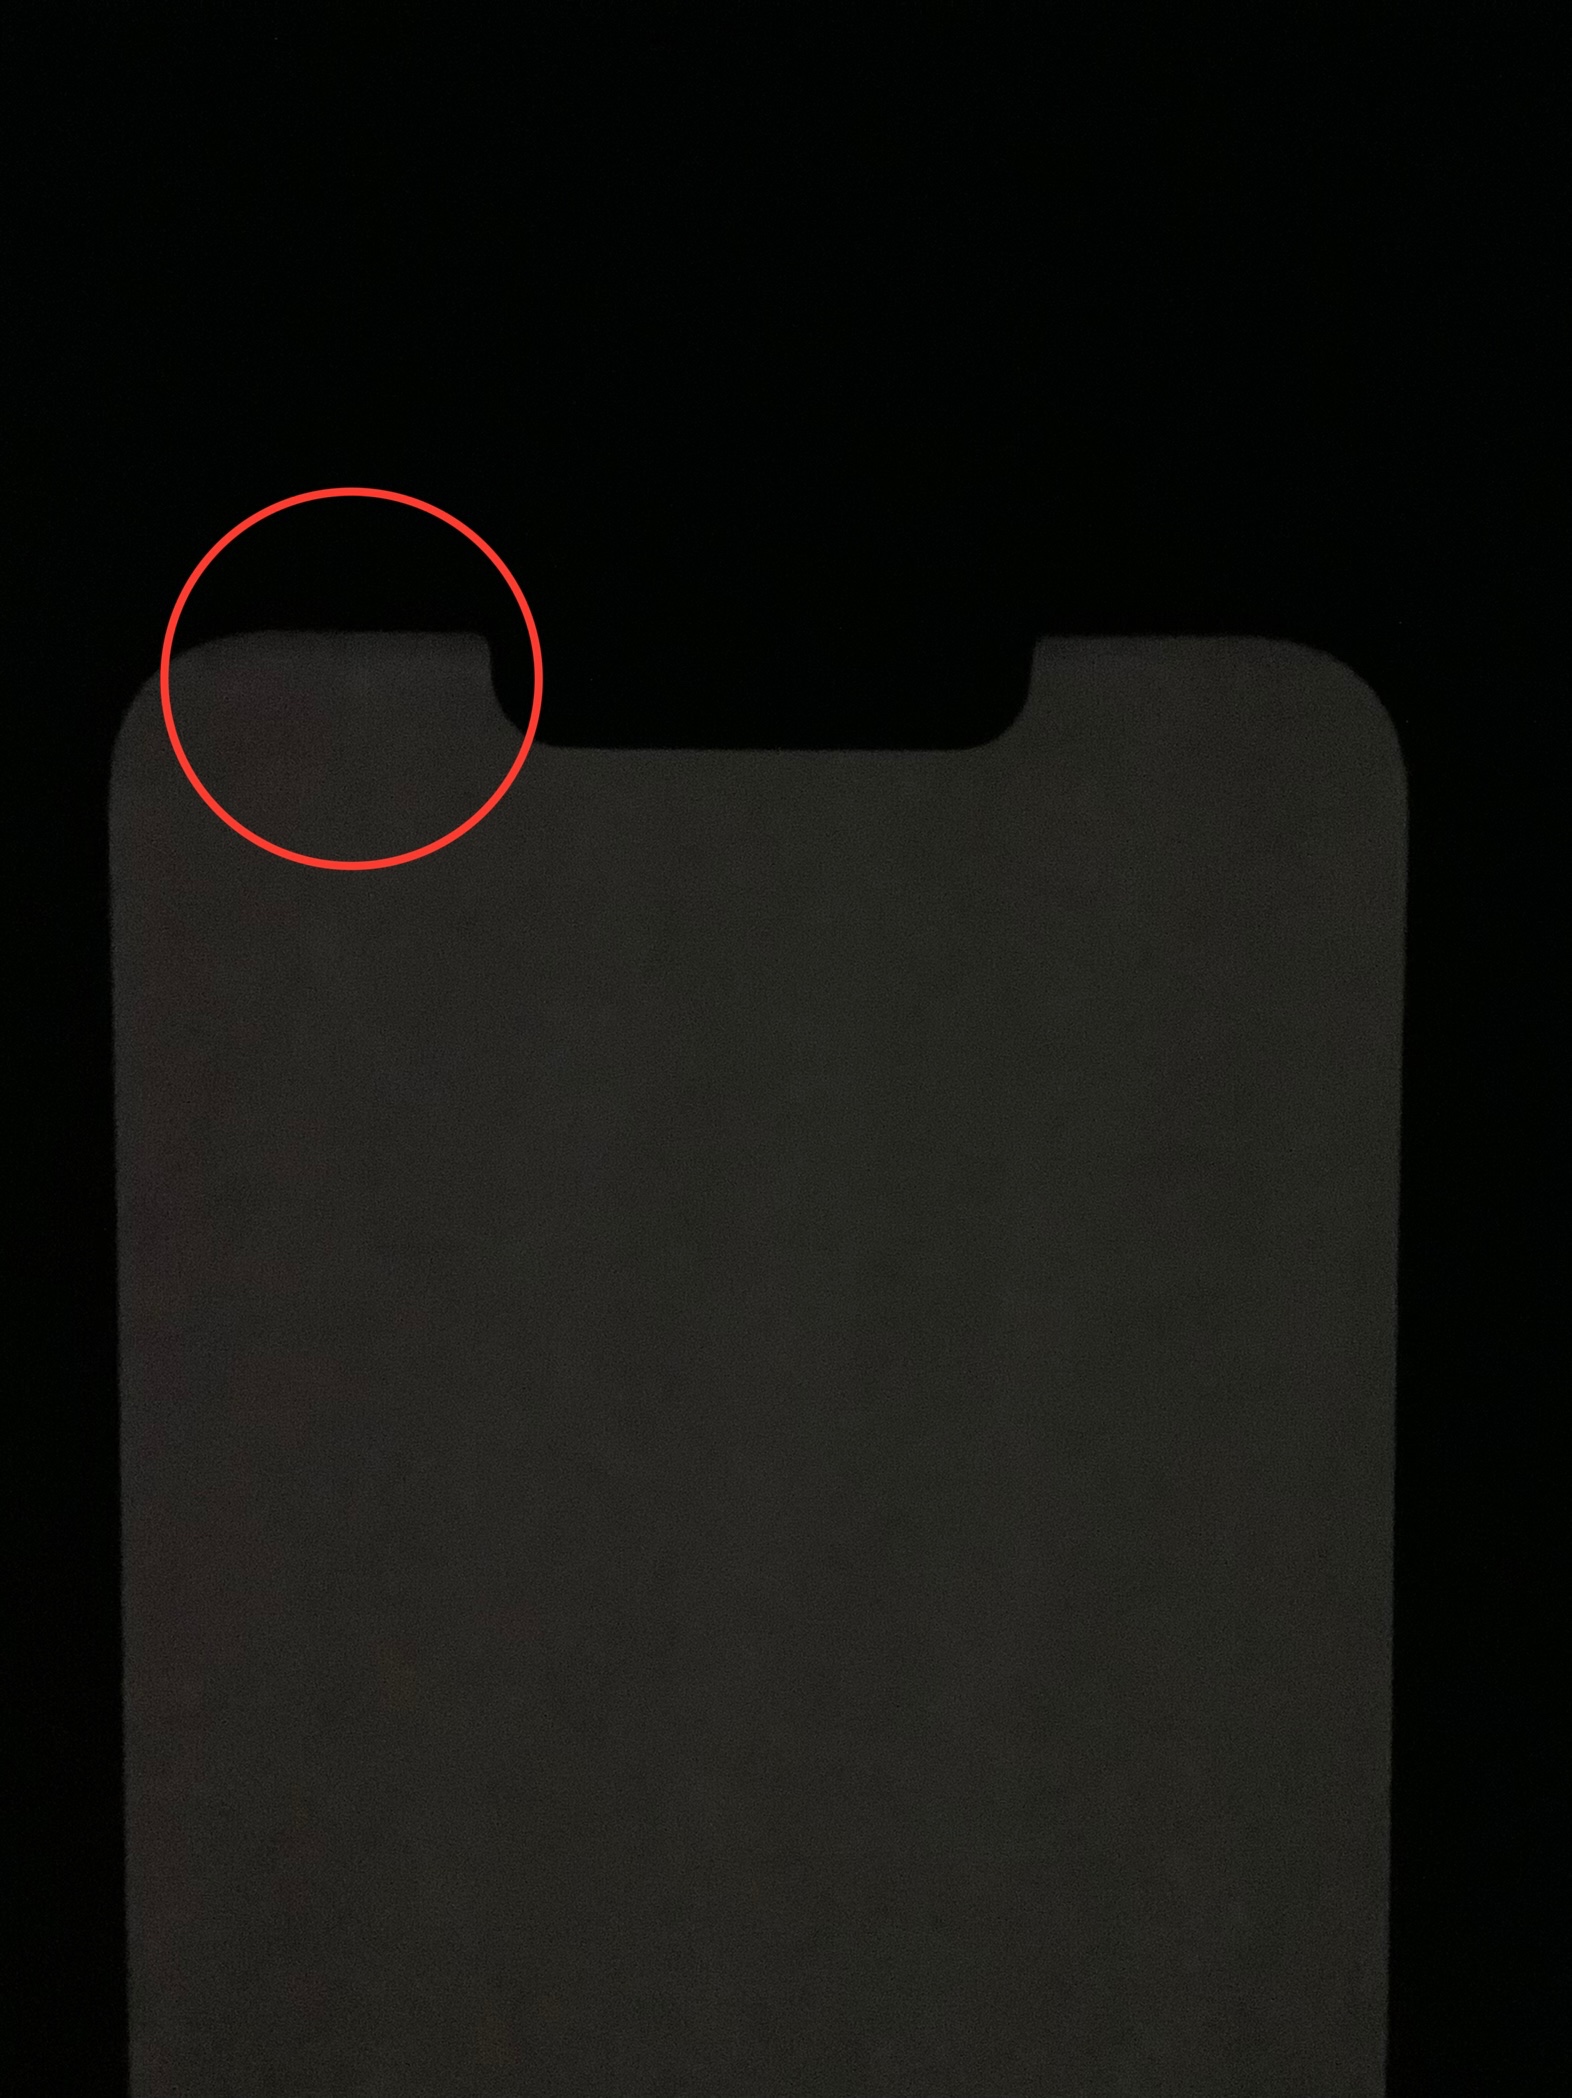 L'écran OLED de l'iPhone 13 Pro Max, qui bat tous les records, est l'écran  de smartphone le plus lumineux du marché, selon l'examen de DisplayMate -   News